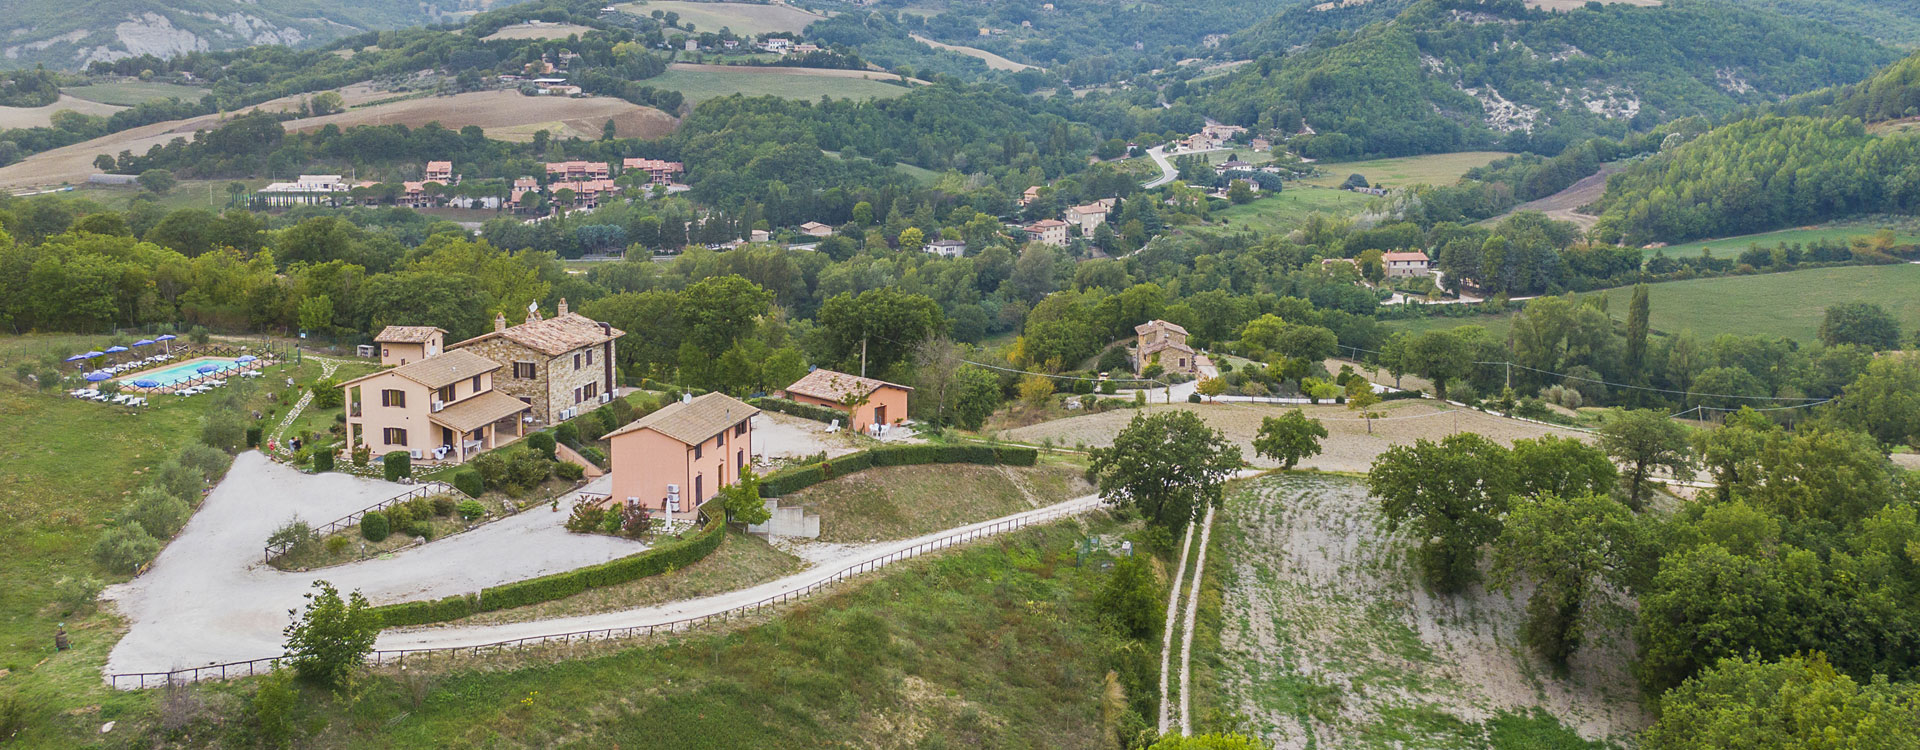 Agriturismo Assisi 'Relais Parco del Subasio' - All'interno del parco naturale del Monte Subasio